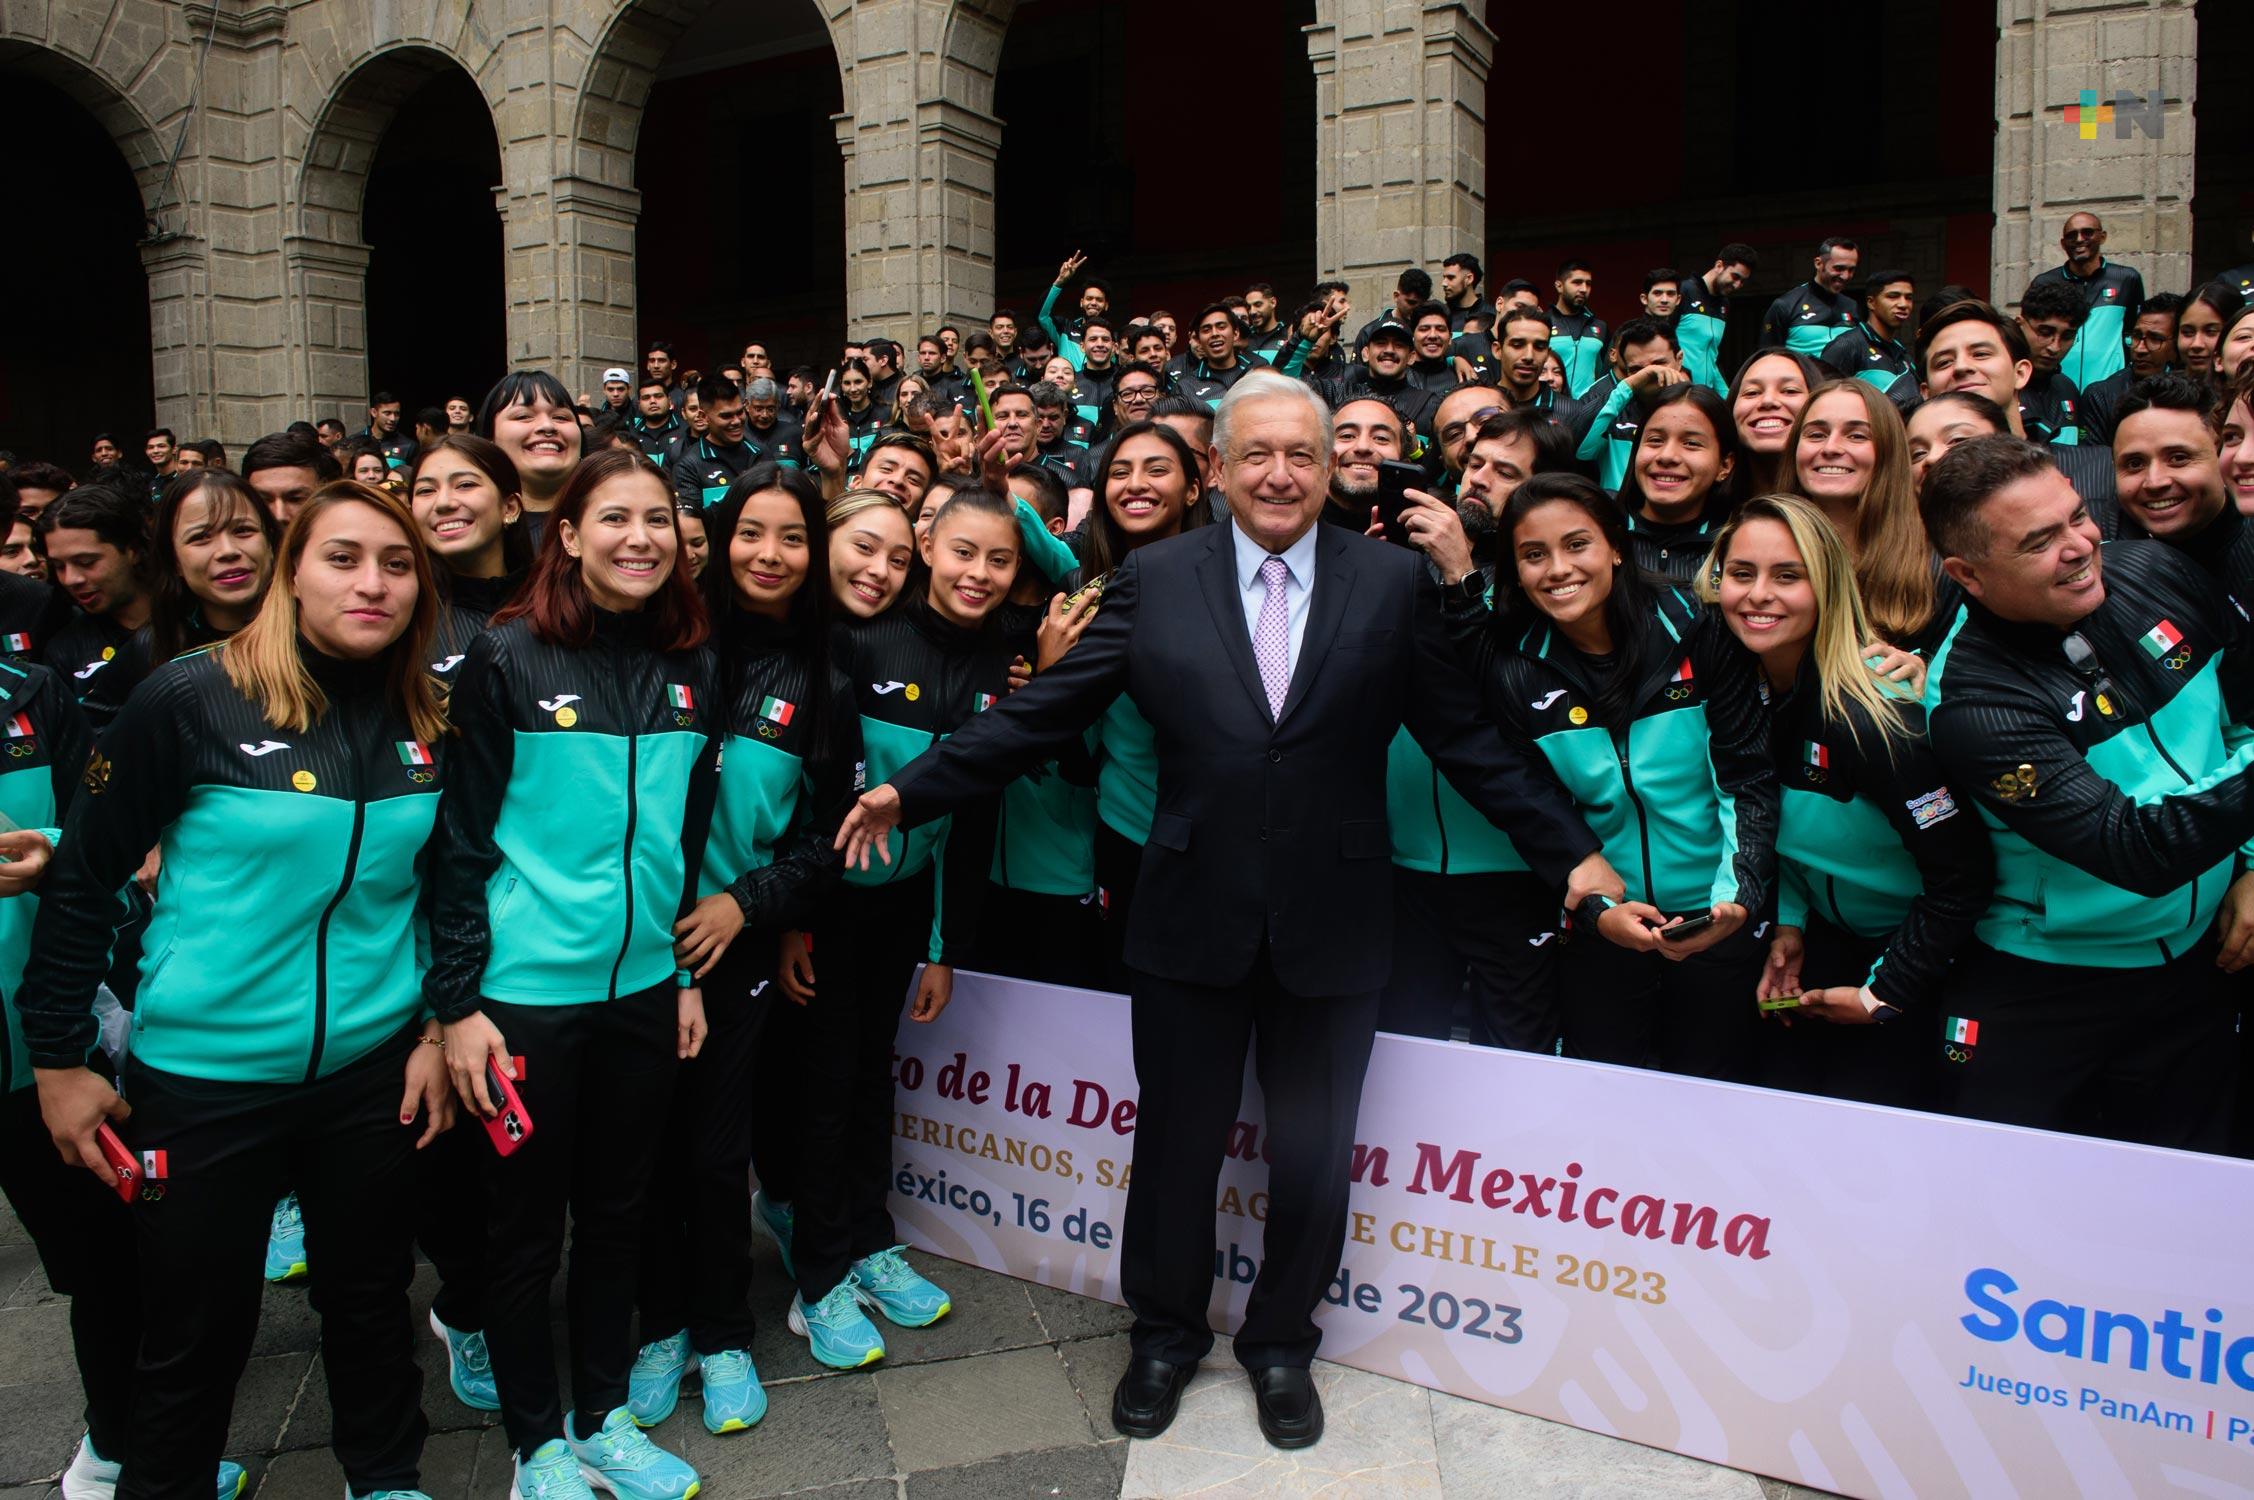 Presidente felicita a deportistas mexicanos por obtener tercer lugar en Juegos Panamericanos 2023